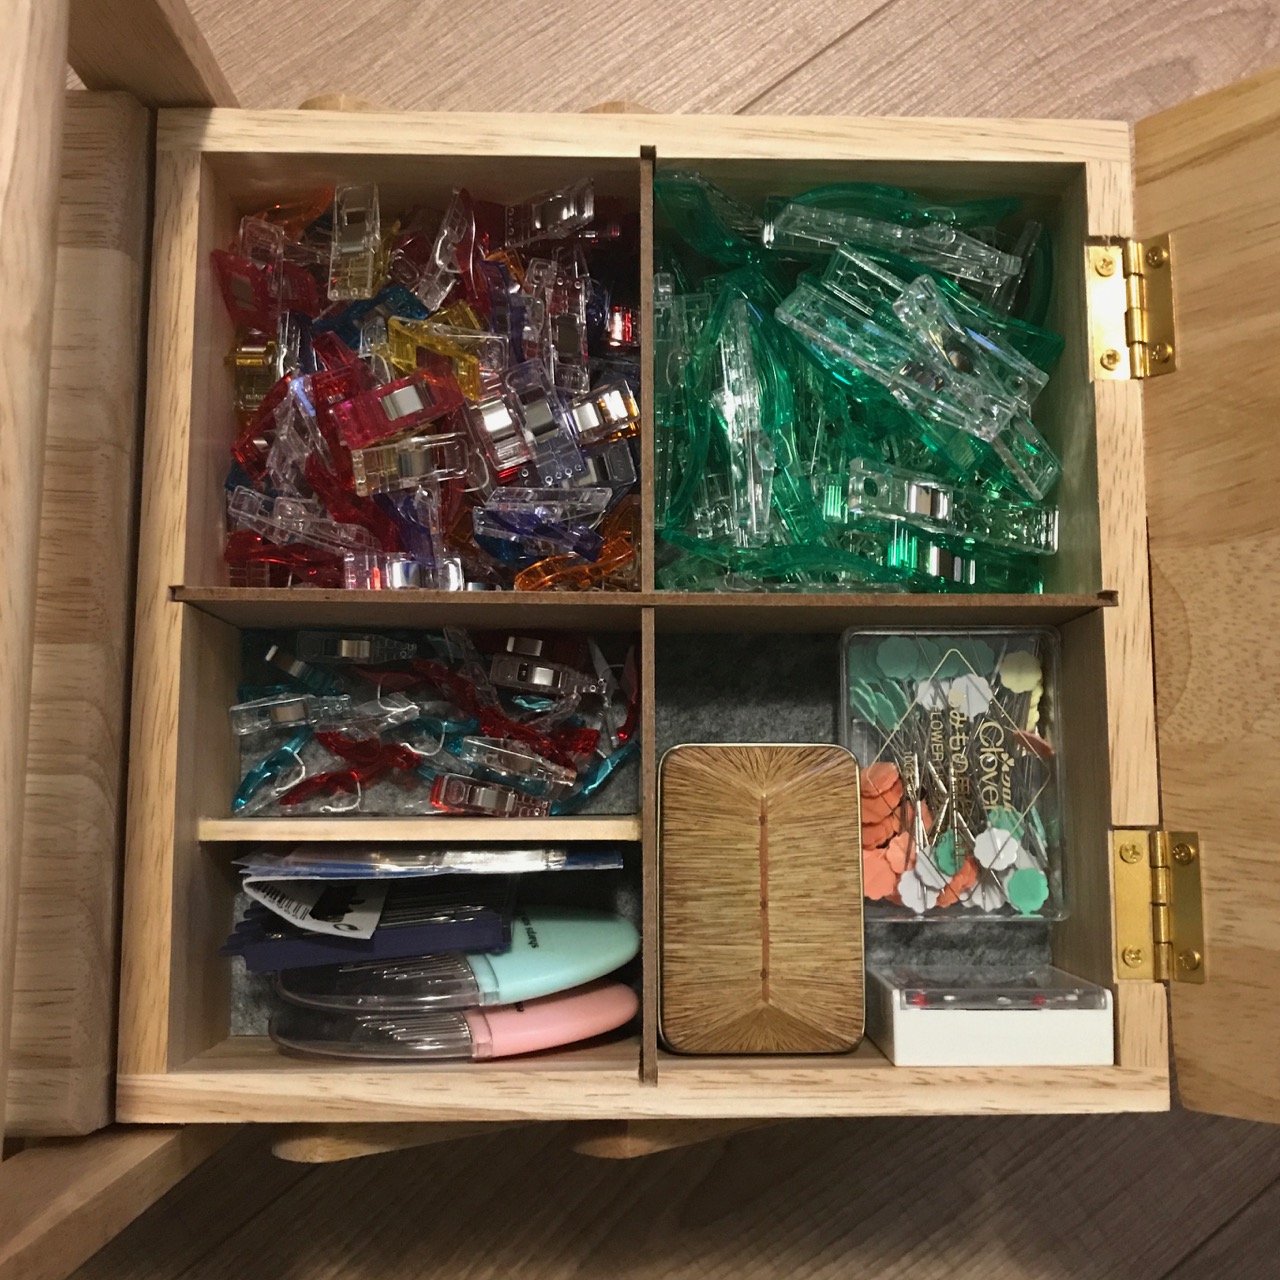 Organizing My Sewing Box